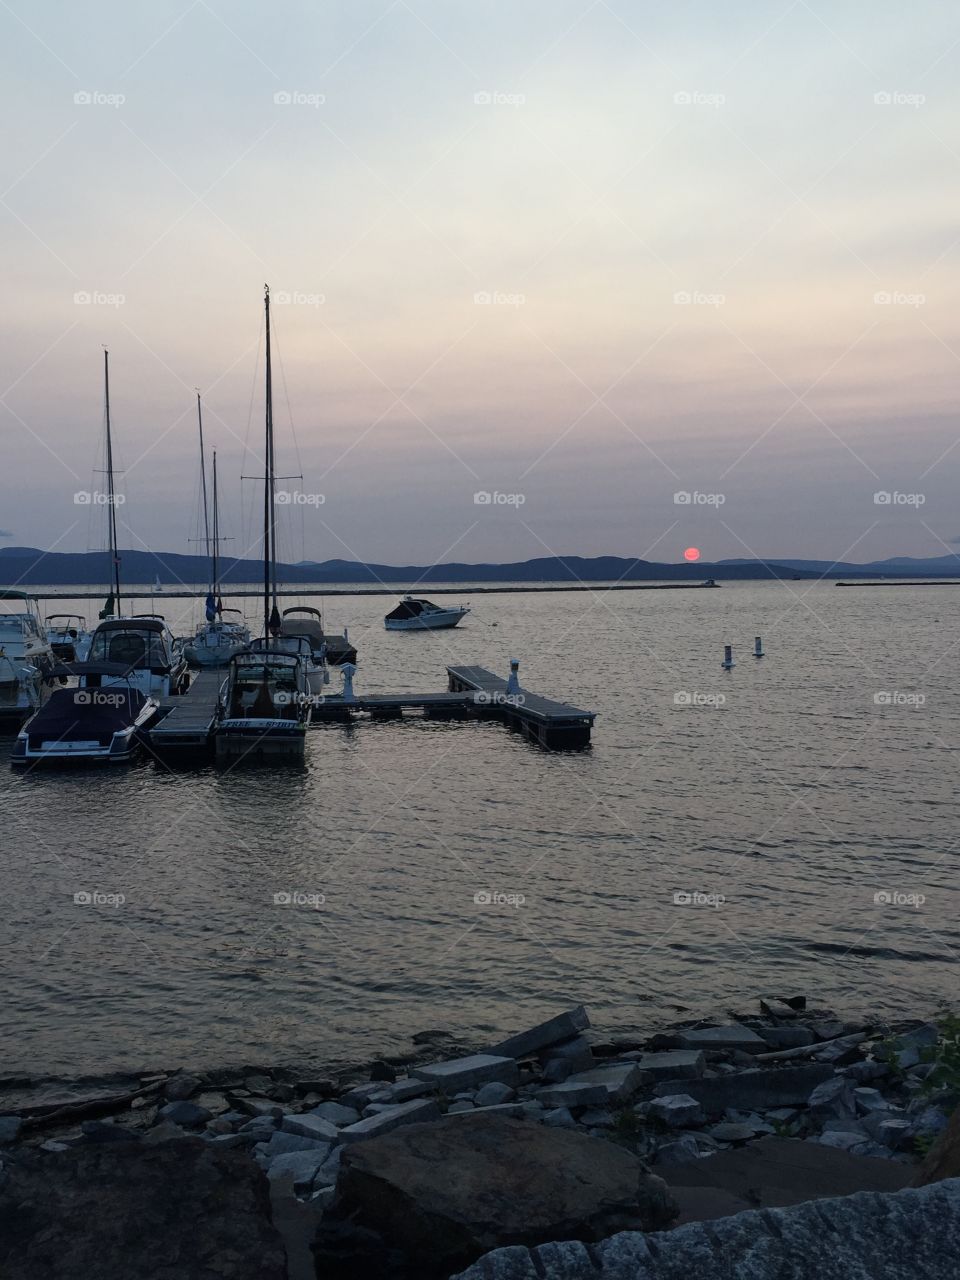 Lake Champlain sunset